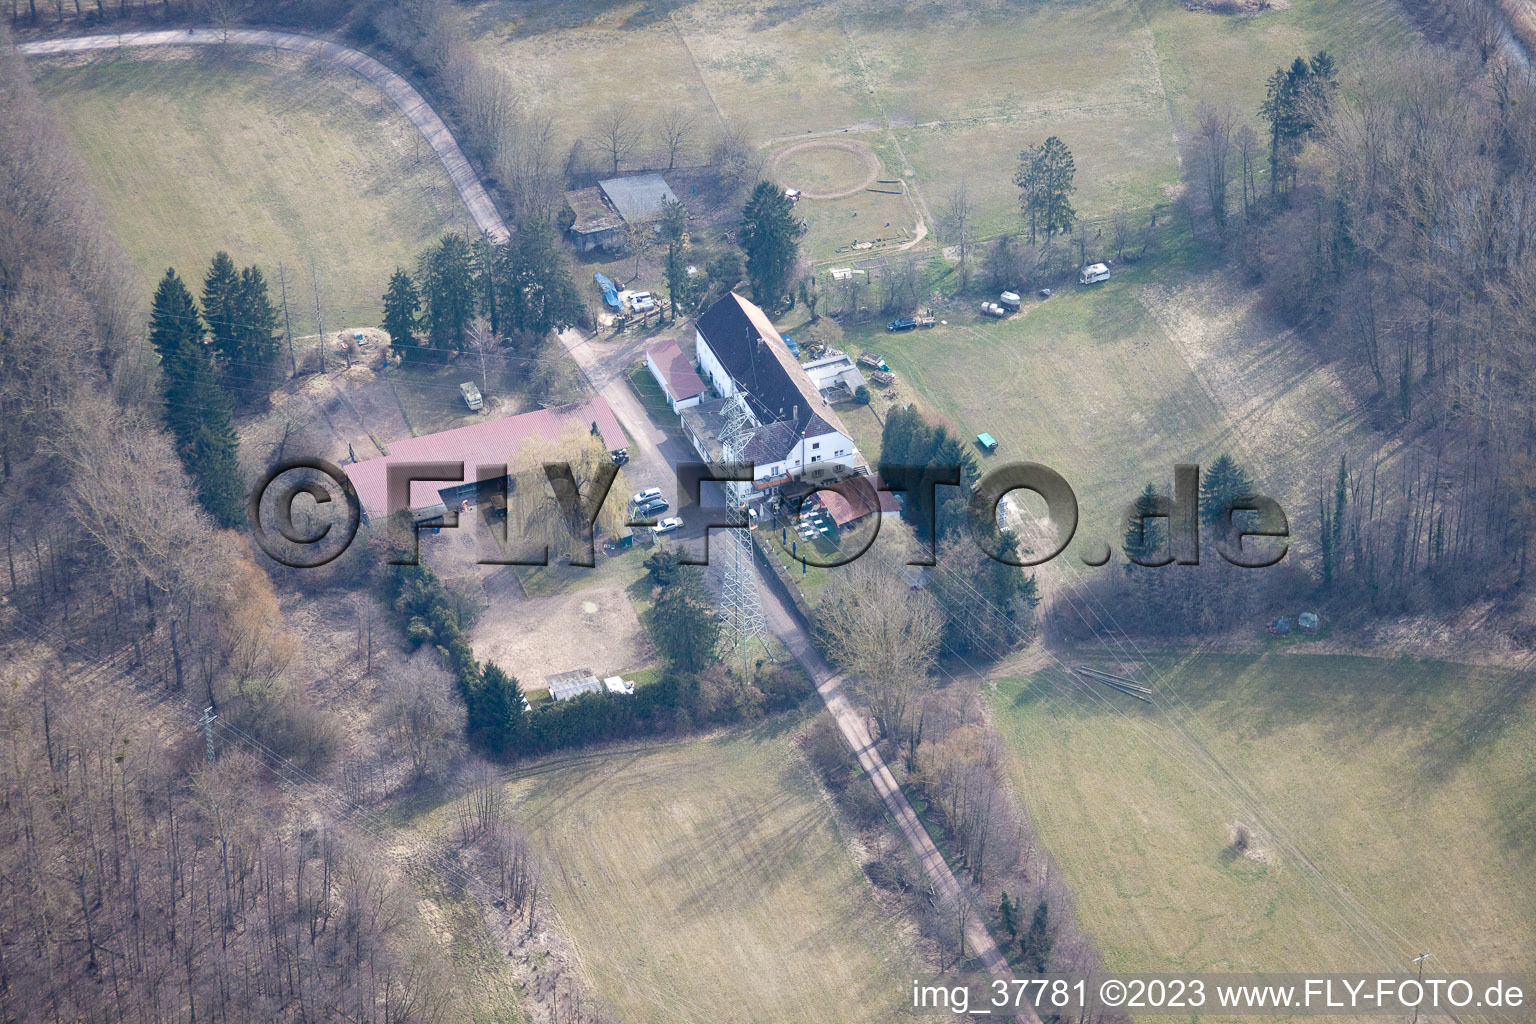 Ortsteil Sondernheim in Germersheim im Bundesland Rheinland-Pfalz, Deutschland aus der Drohnenperspektive